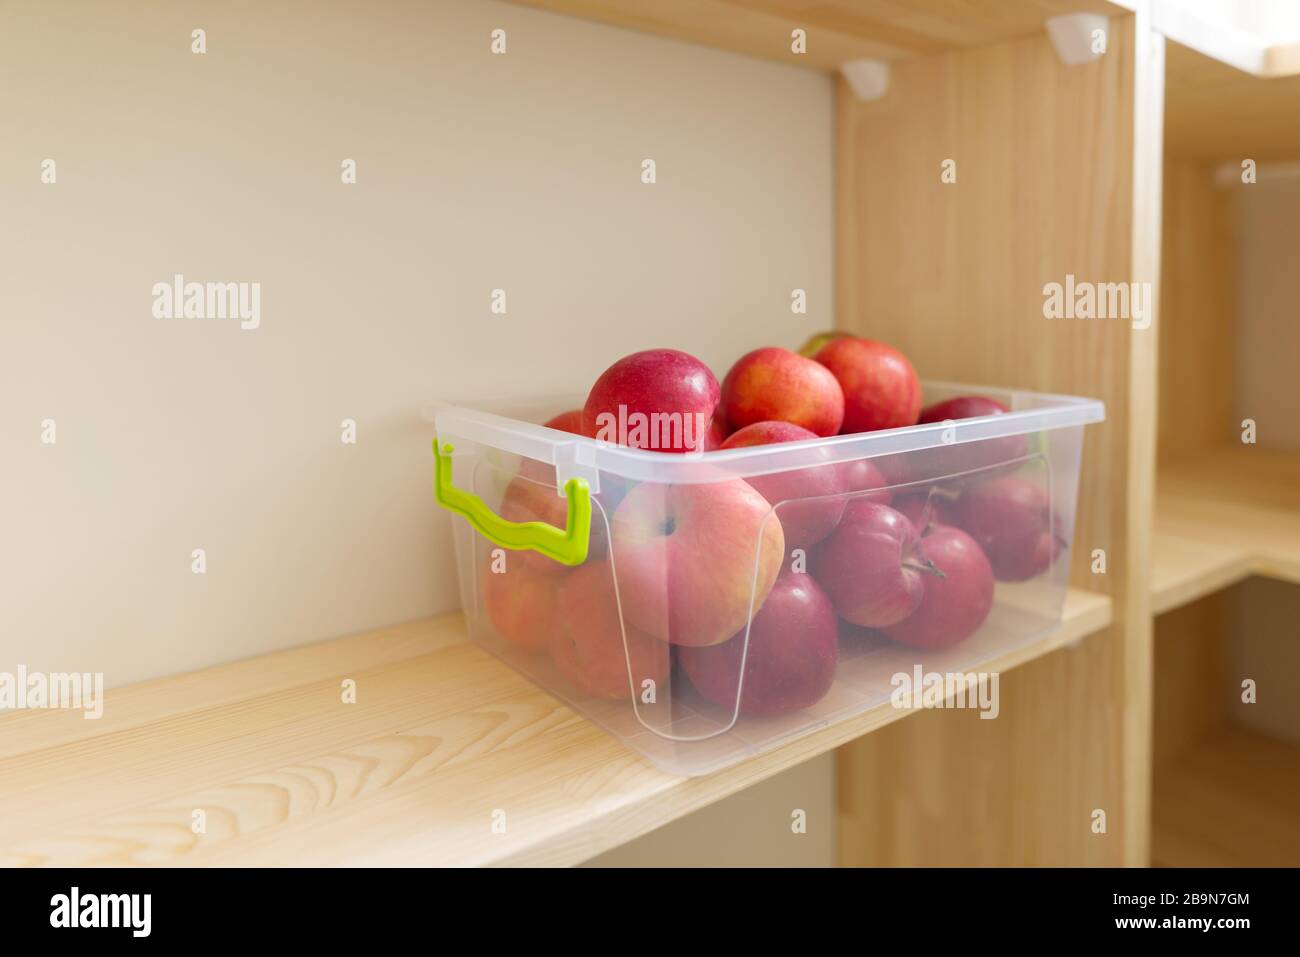 Conservazione degli alimenti, scaffali in legno nella dispensa con contenitori di mele. Foto Stock